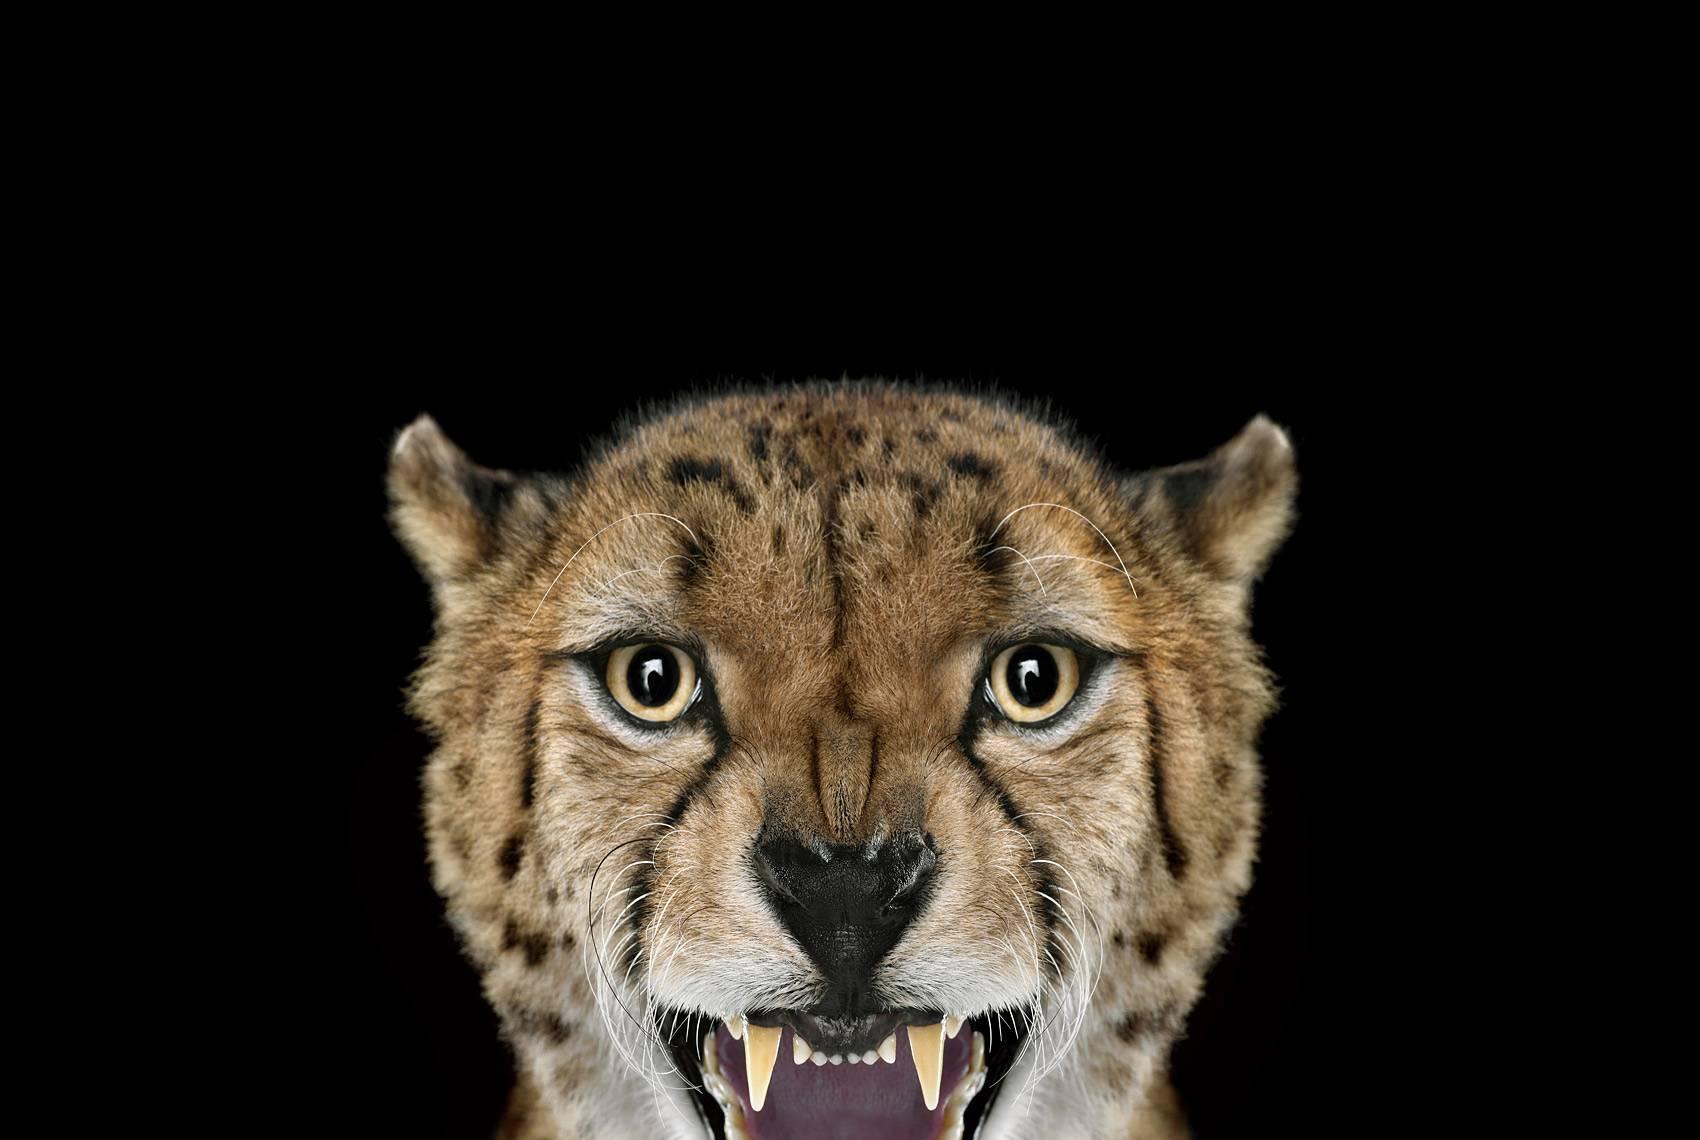 Cheetah #3, Los Angeles, CA, 2011" ist eine limitierte Auflage eines Fotos des zeitgenössischen Künstlers Brad Wilson aus der Serie "Affinity", die Studioporträts von Wildtieren zeigt. 

Dieses Foto wird nur als ungerahmter Abzug verkauft. Es ist in